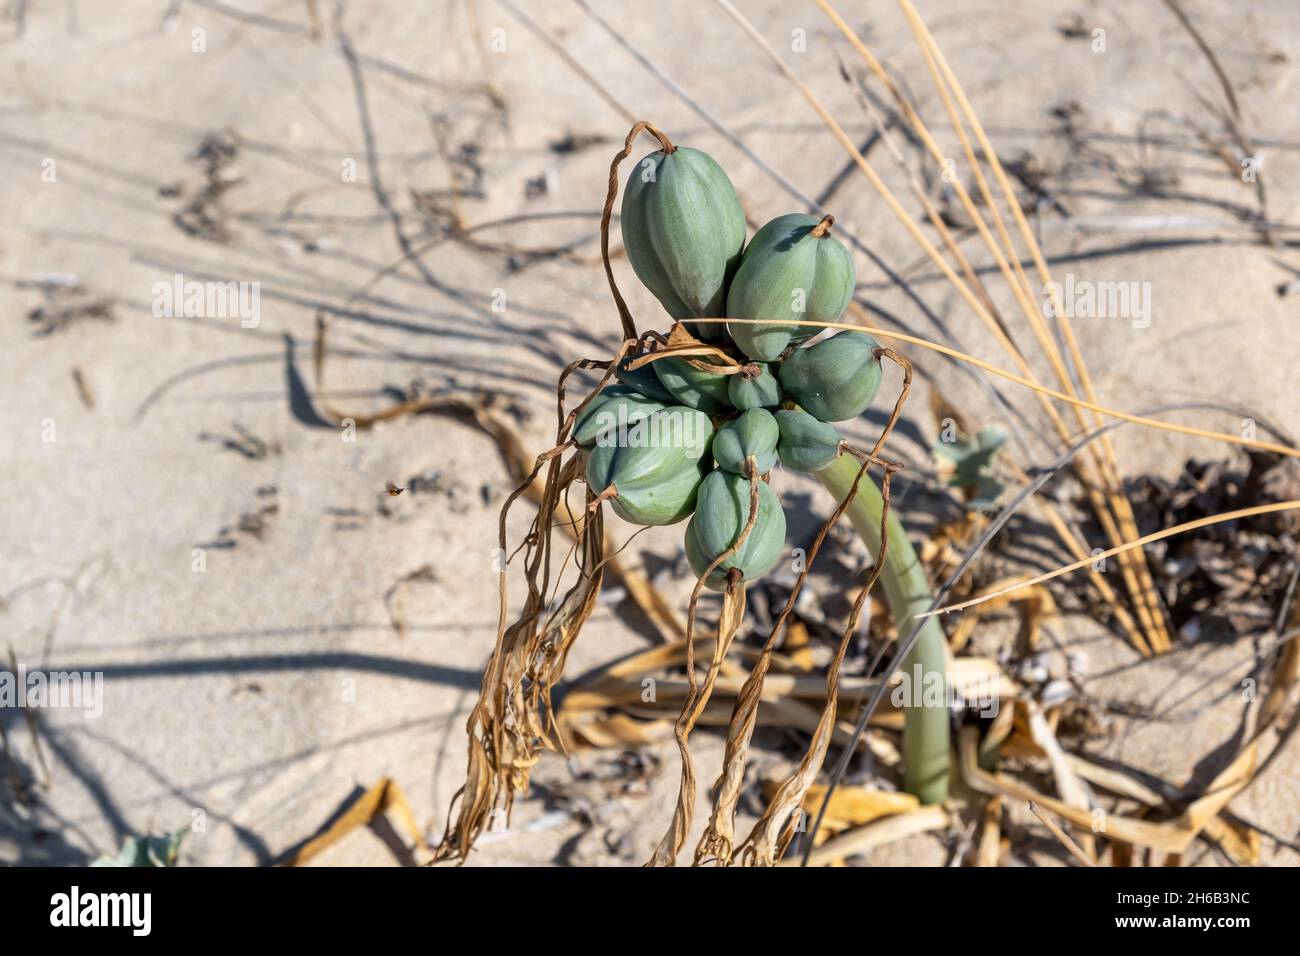 Seedaffodil, Pancratium maritimum, blühende, knollige Wildpflanze, weiße Blüten. Sandlilie wächst am Sandstrand und in den Küstensanddünen am Mittelmeer Stockfoto